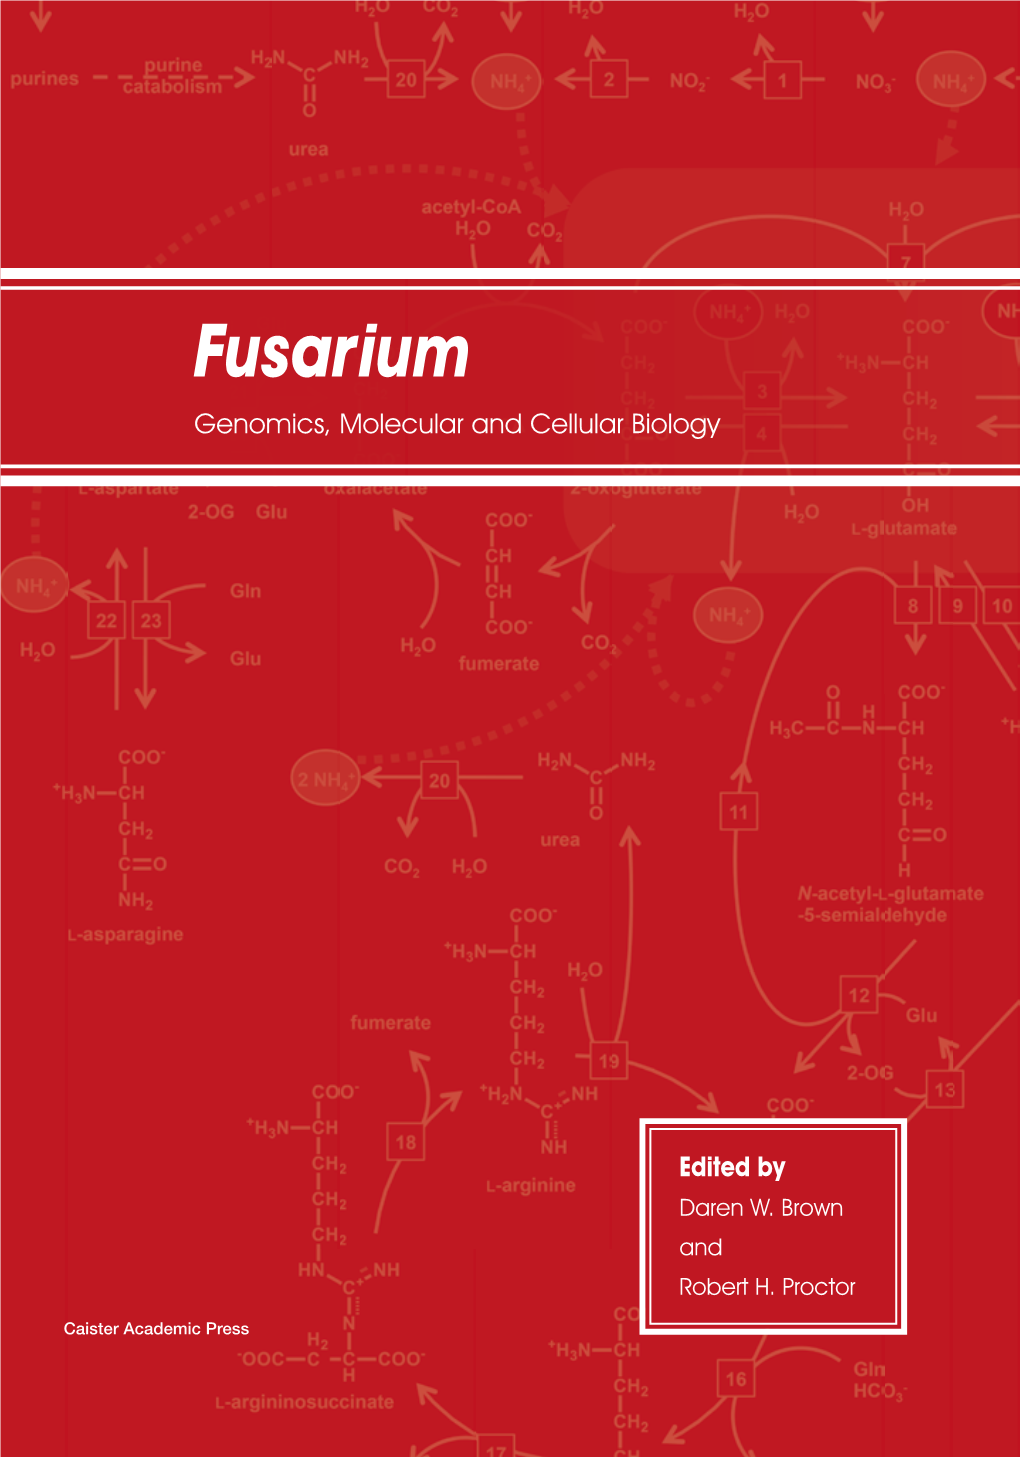 Fusarium Genomics, Molecular and Cellular Biology